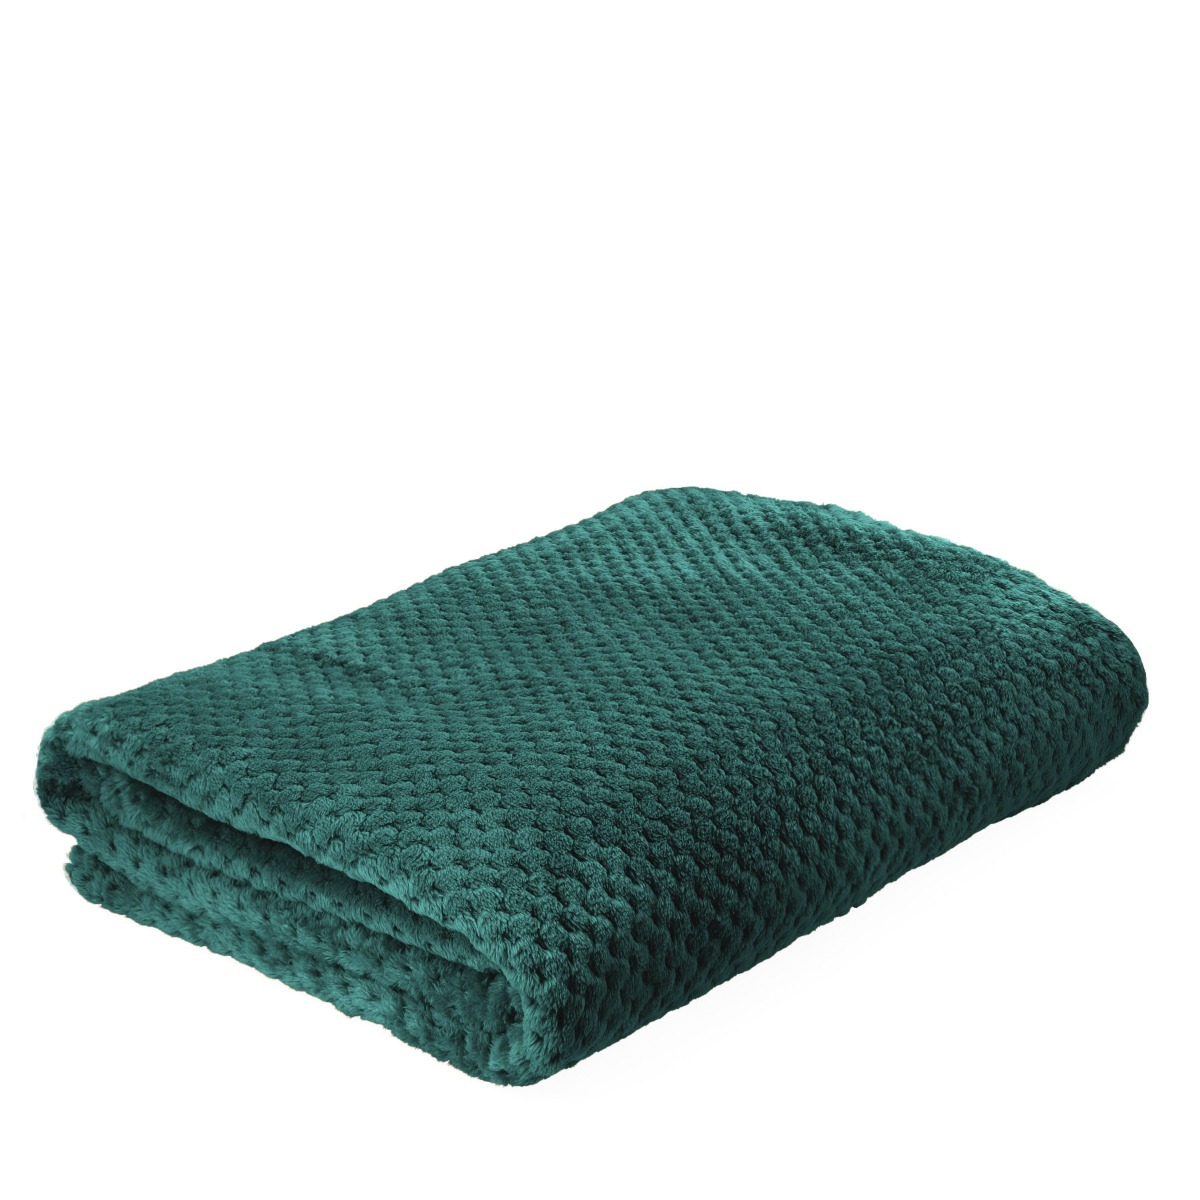 Mikrovláknová deka s jemným vzorem NOA zelená 150x200 cm Homla